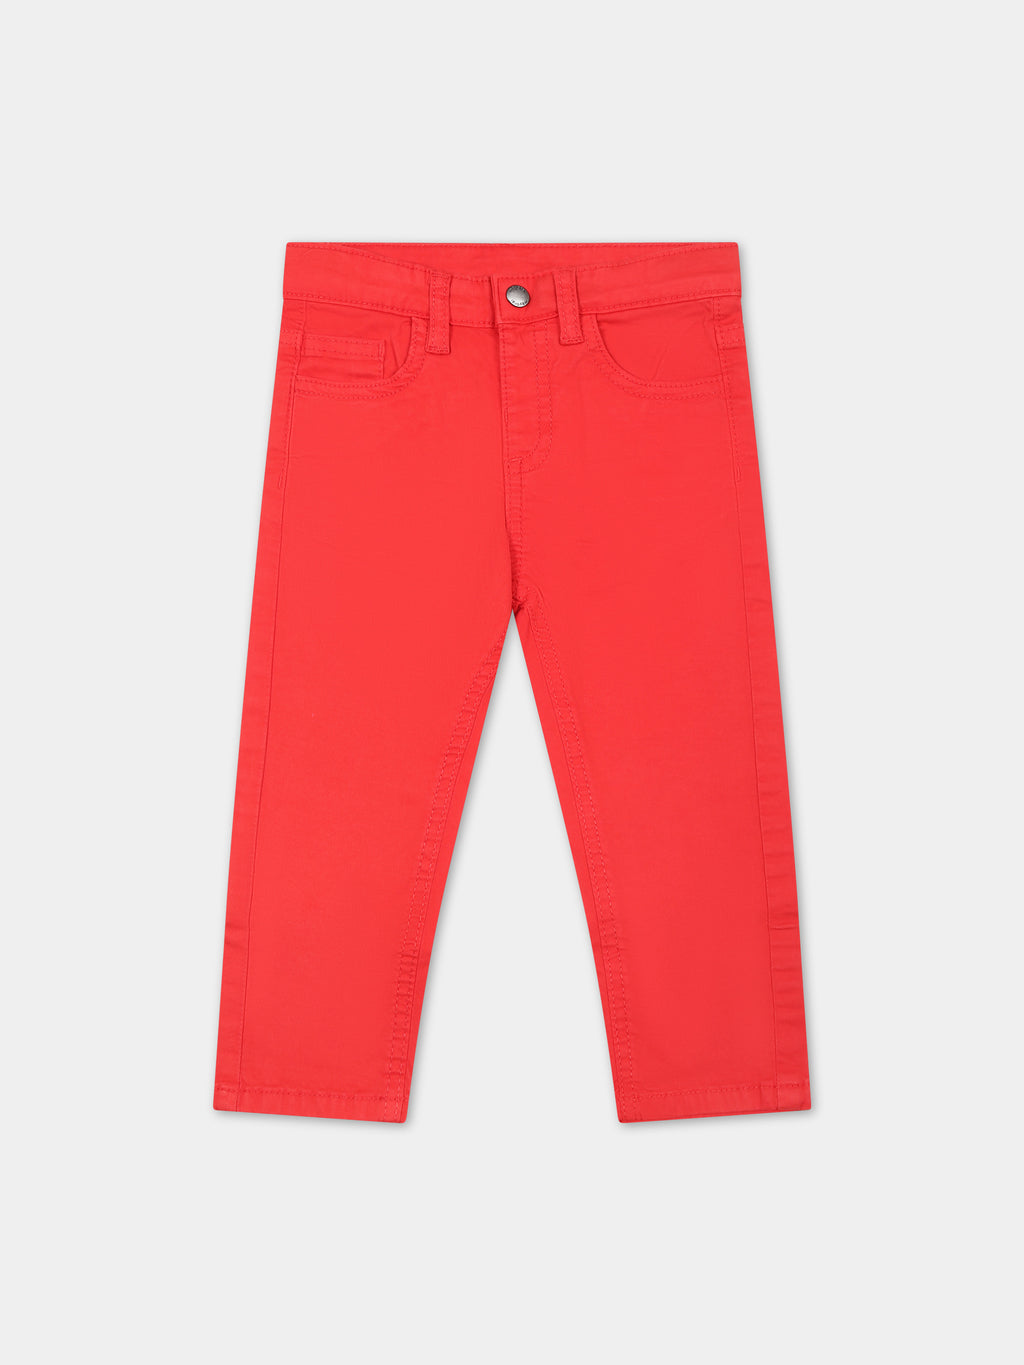 Pantalon rouge pour bébé garçon